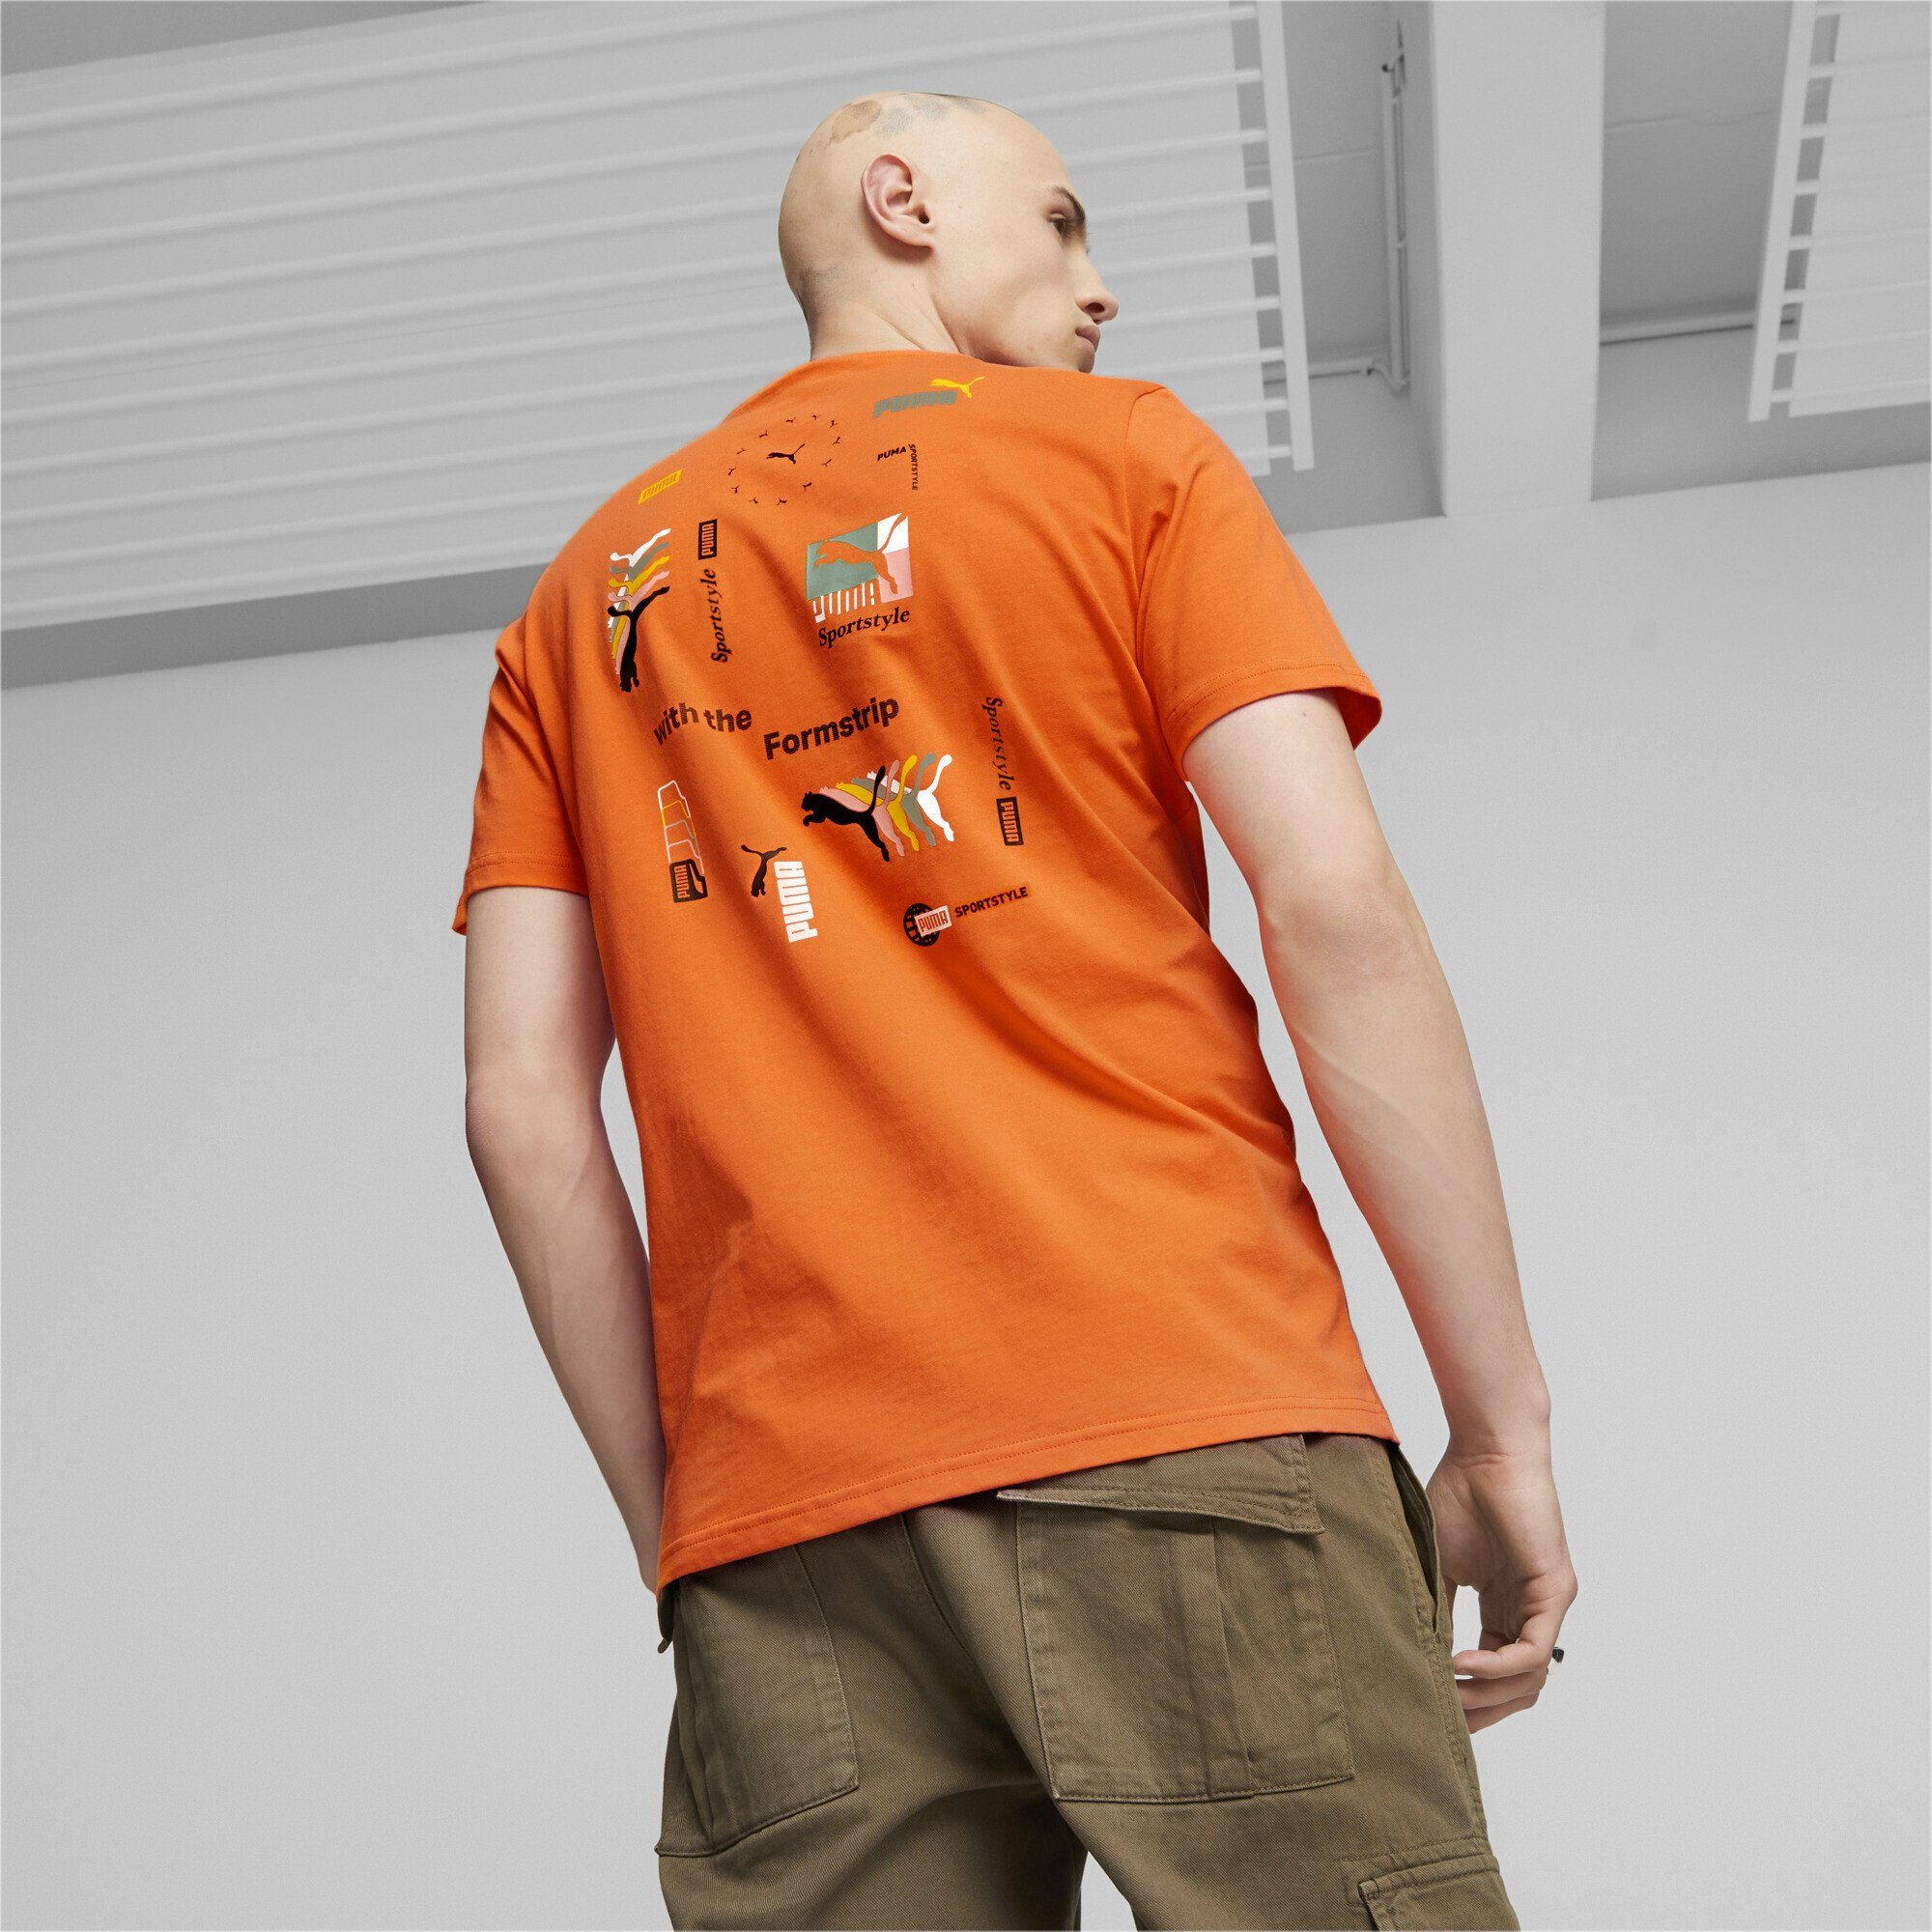 PUMA T-Shirt Brand Herren Hot T-Shirt Classics Love Orange Heat